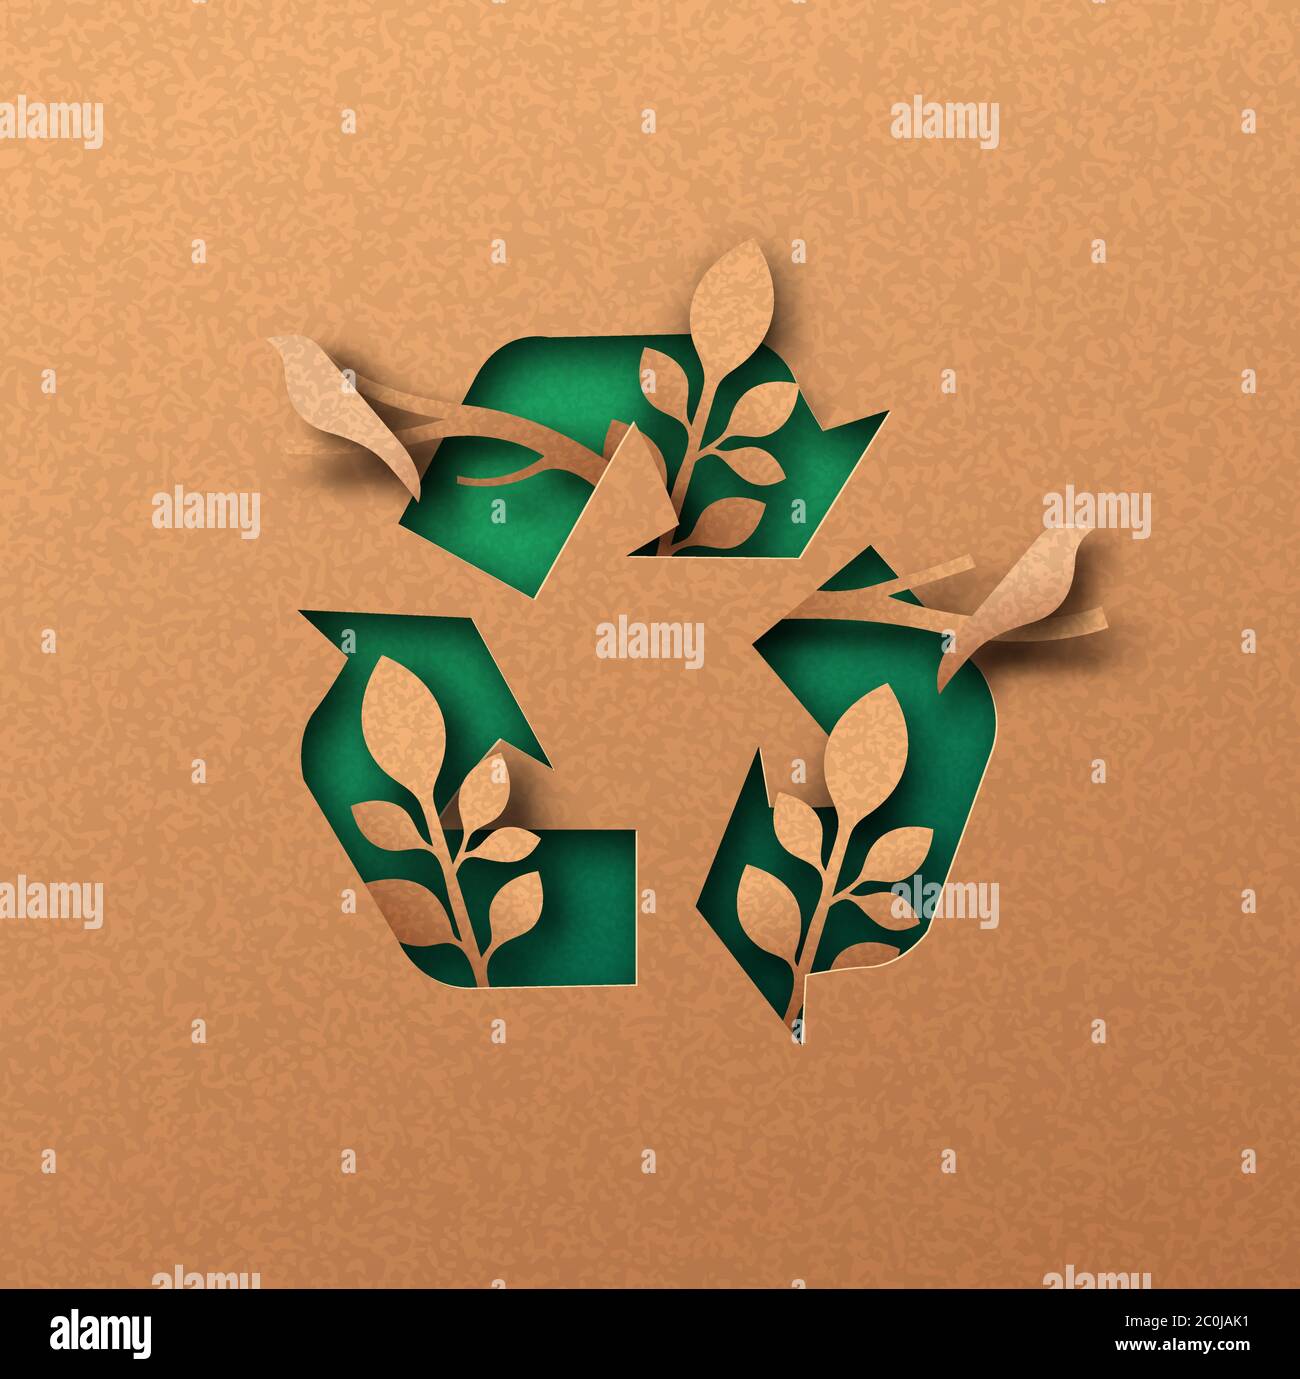 Recycling Icon Papierschnitt Illustration mit Pflanzen Blatt und Vogel Tiere. Umweltfreundliches Recycling-Symbol, Wiederverwendung Abfallkreislauf Konzept. 3d-Ausschnitt in recyceltem p Stock Vektor